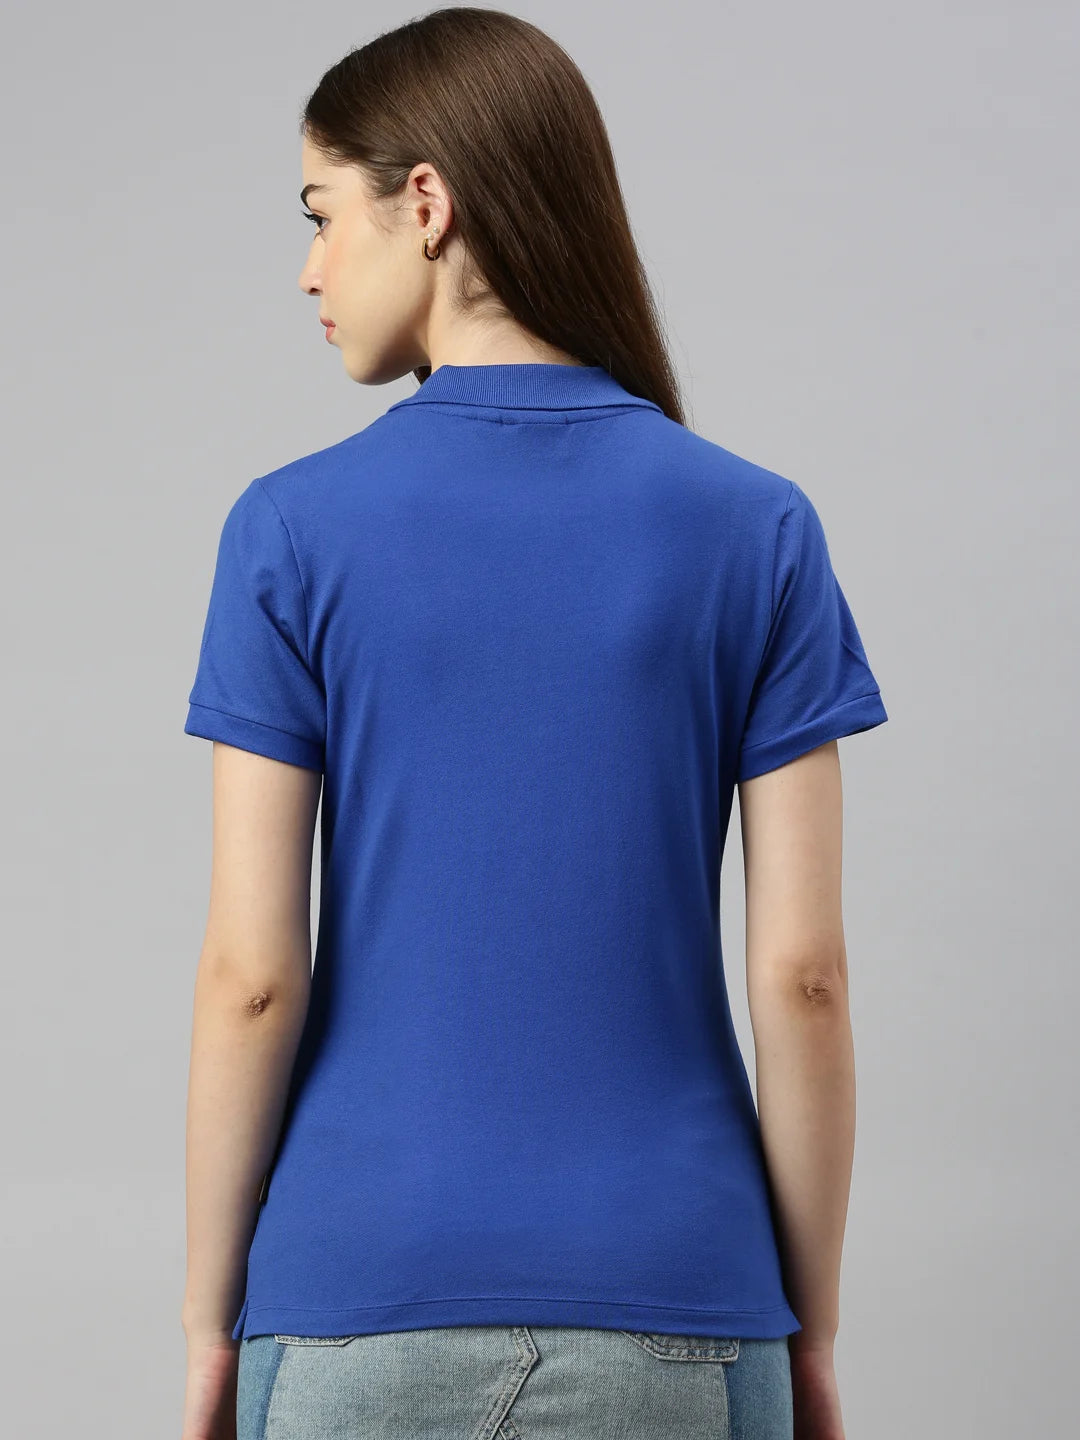 donna-stacy-bio-fairtrade-polo-maglietta-brillante-azzurro-schiena-oceano